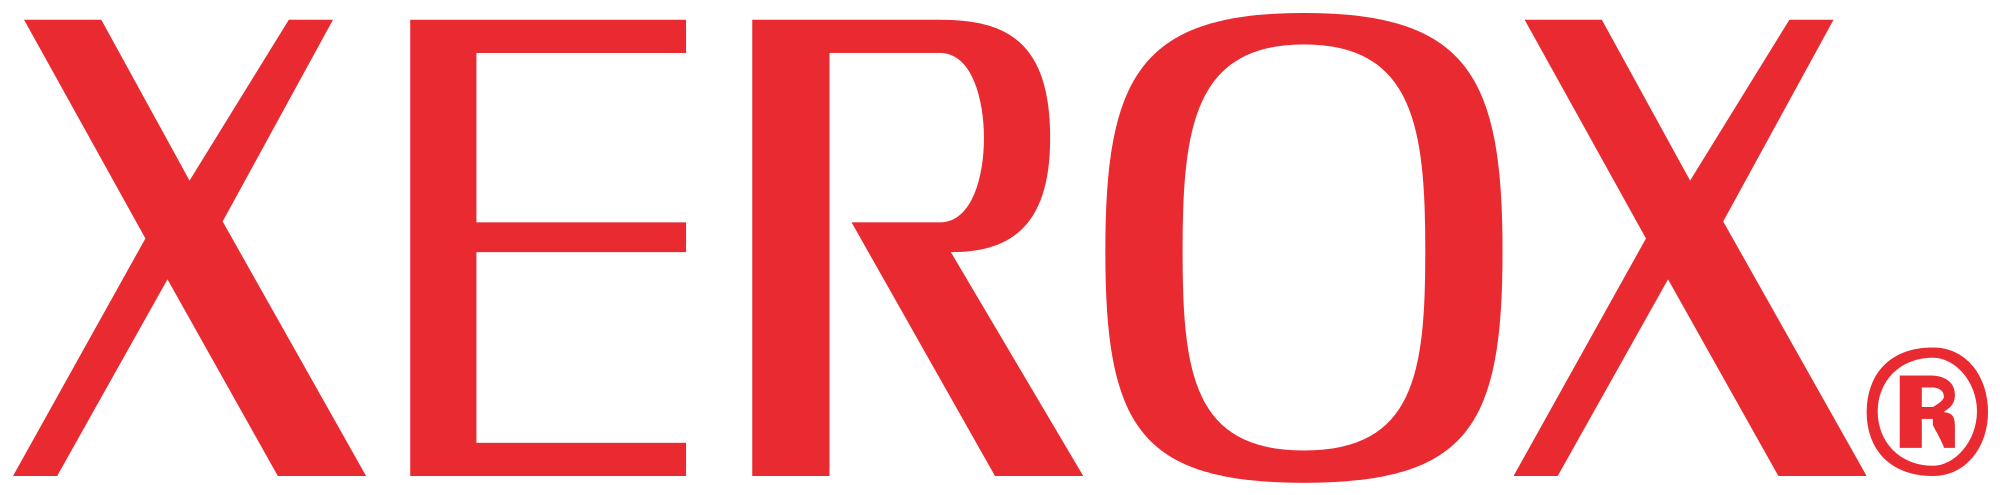 https://0201.nccdn.net/1_2/000/000/17f/3f0/Xerox-Logo.svg.png